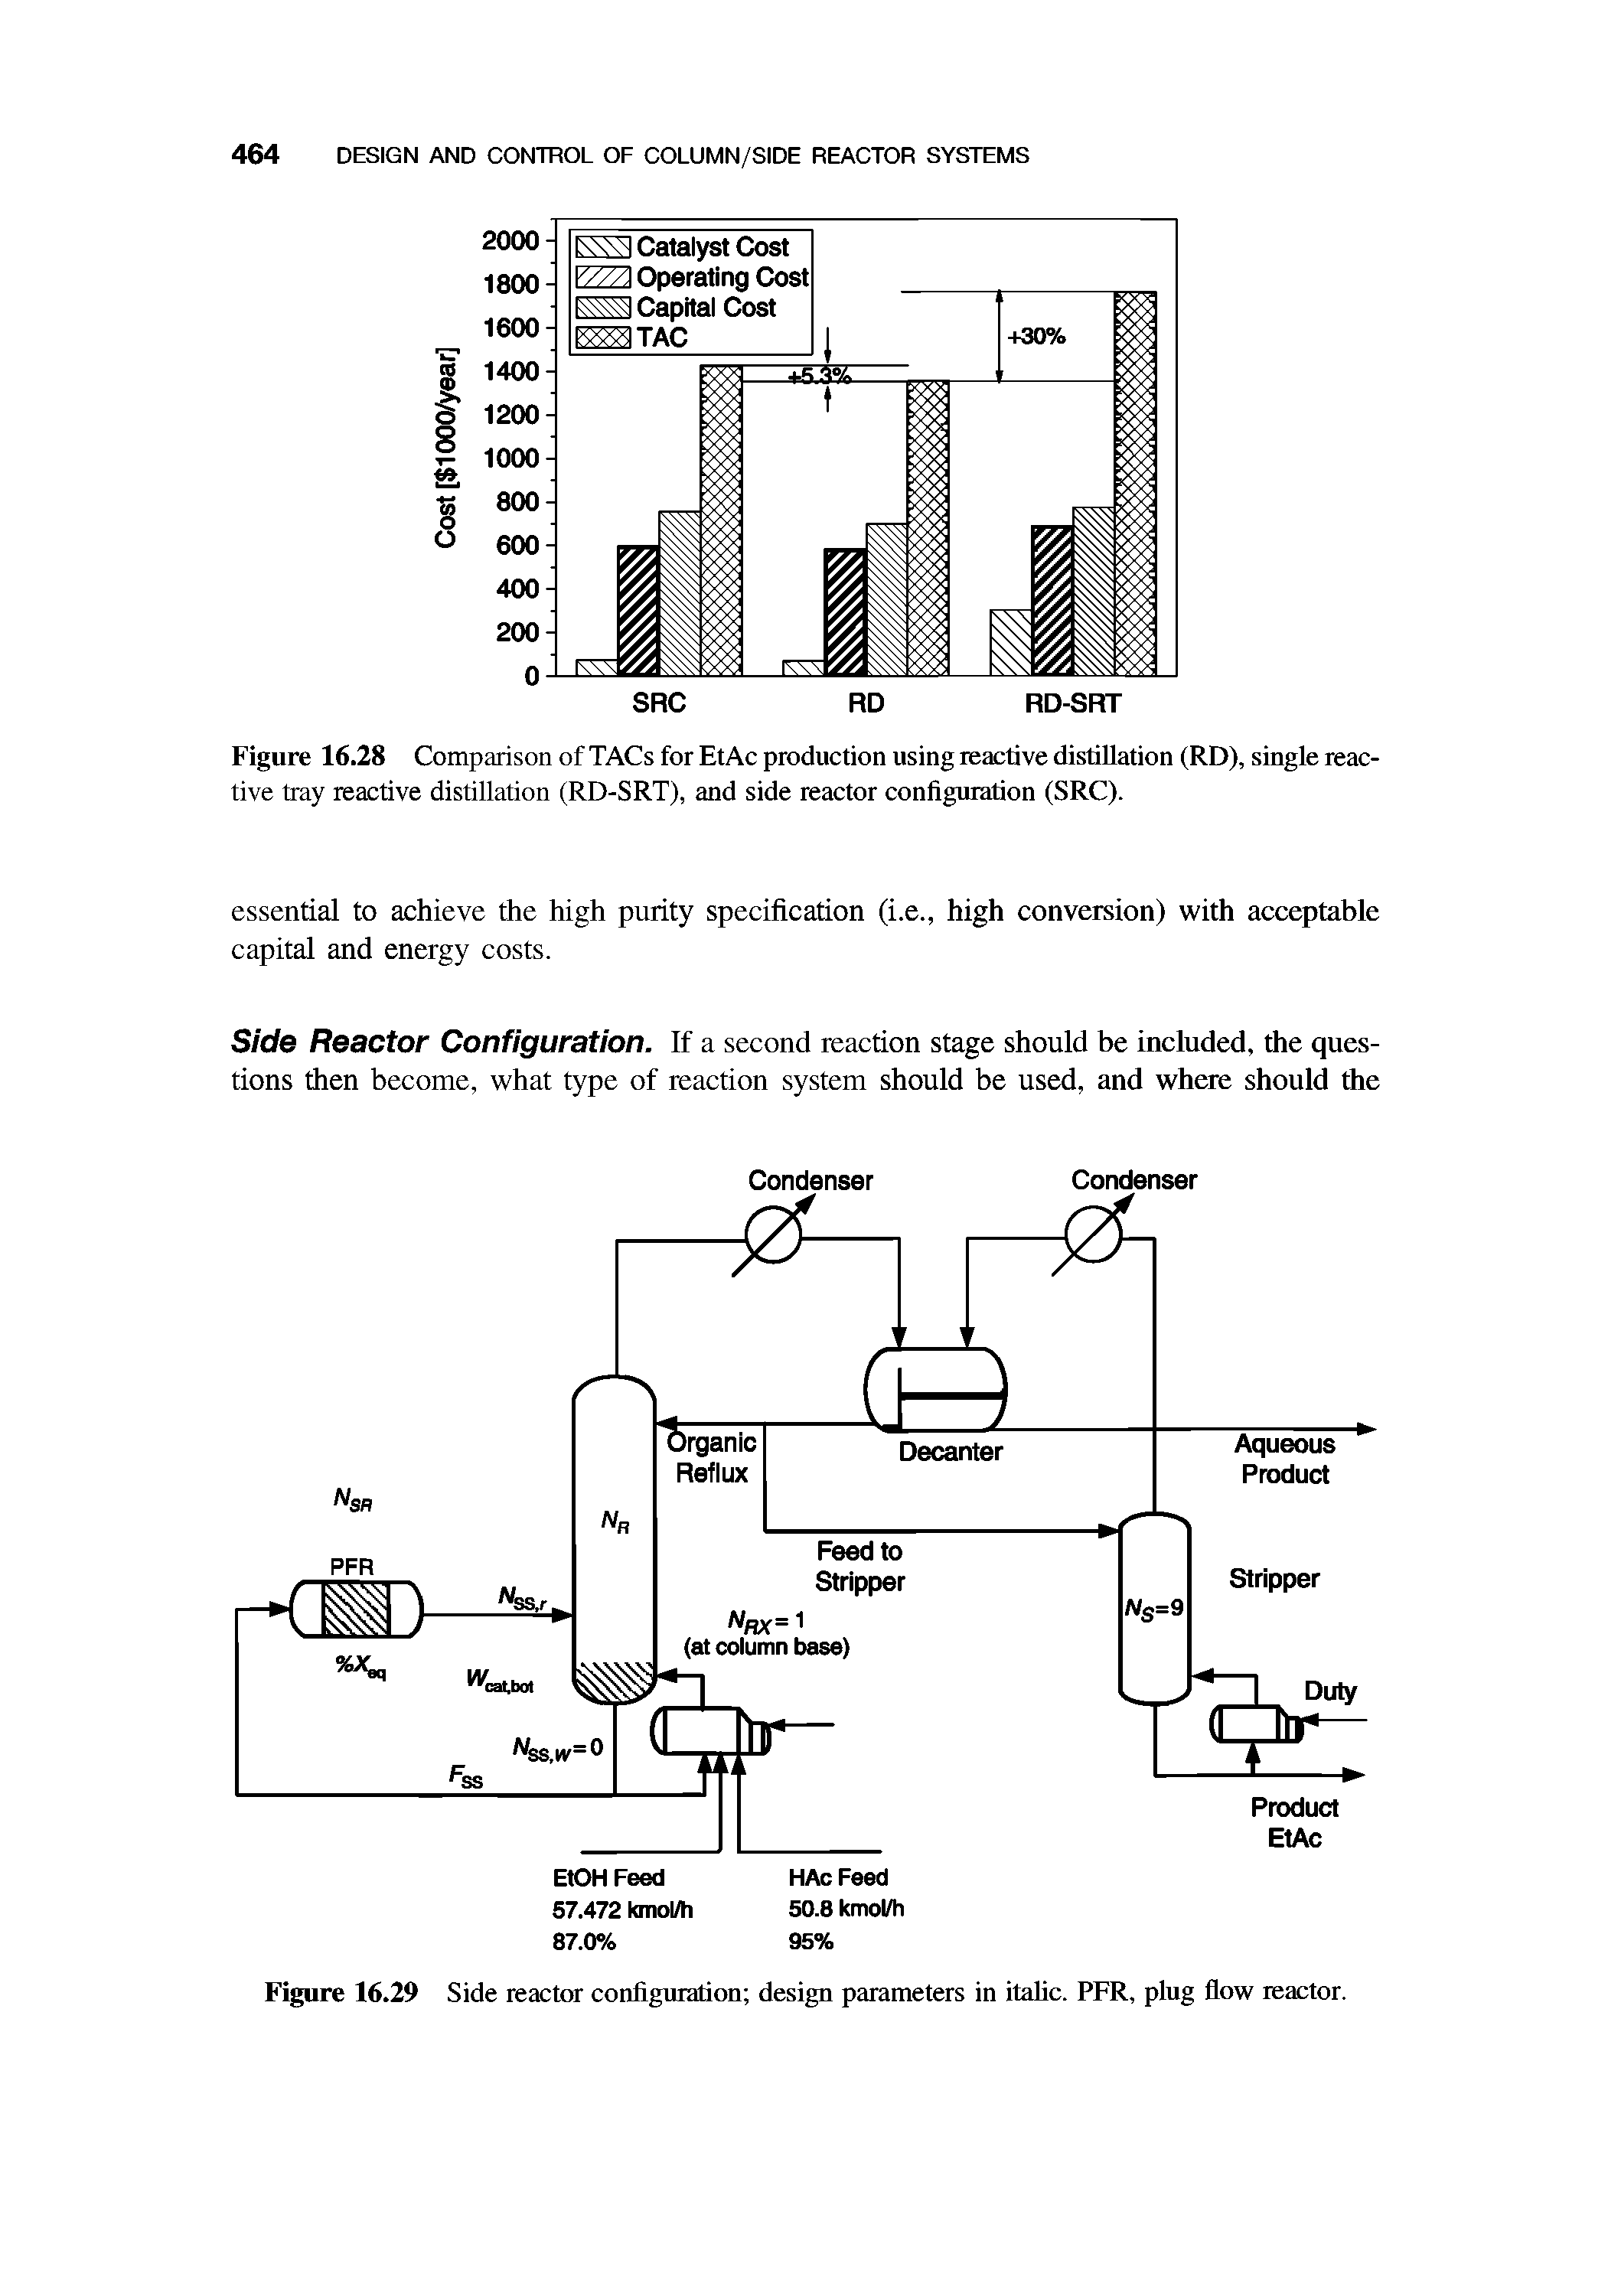 Figure 16.28 Comparison of TACs for EtAc production using reactive distillation (RD), single reactive tray reactive distillation (RD-SRT), and side reactor configuration (SRC).